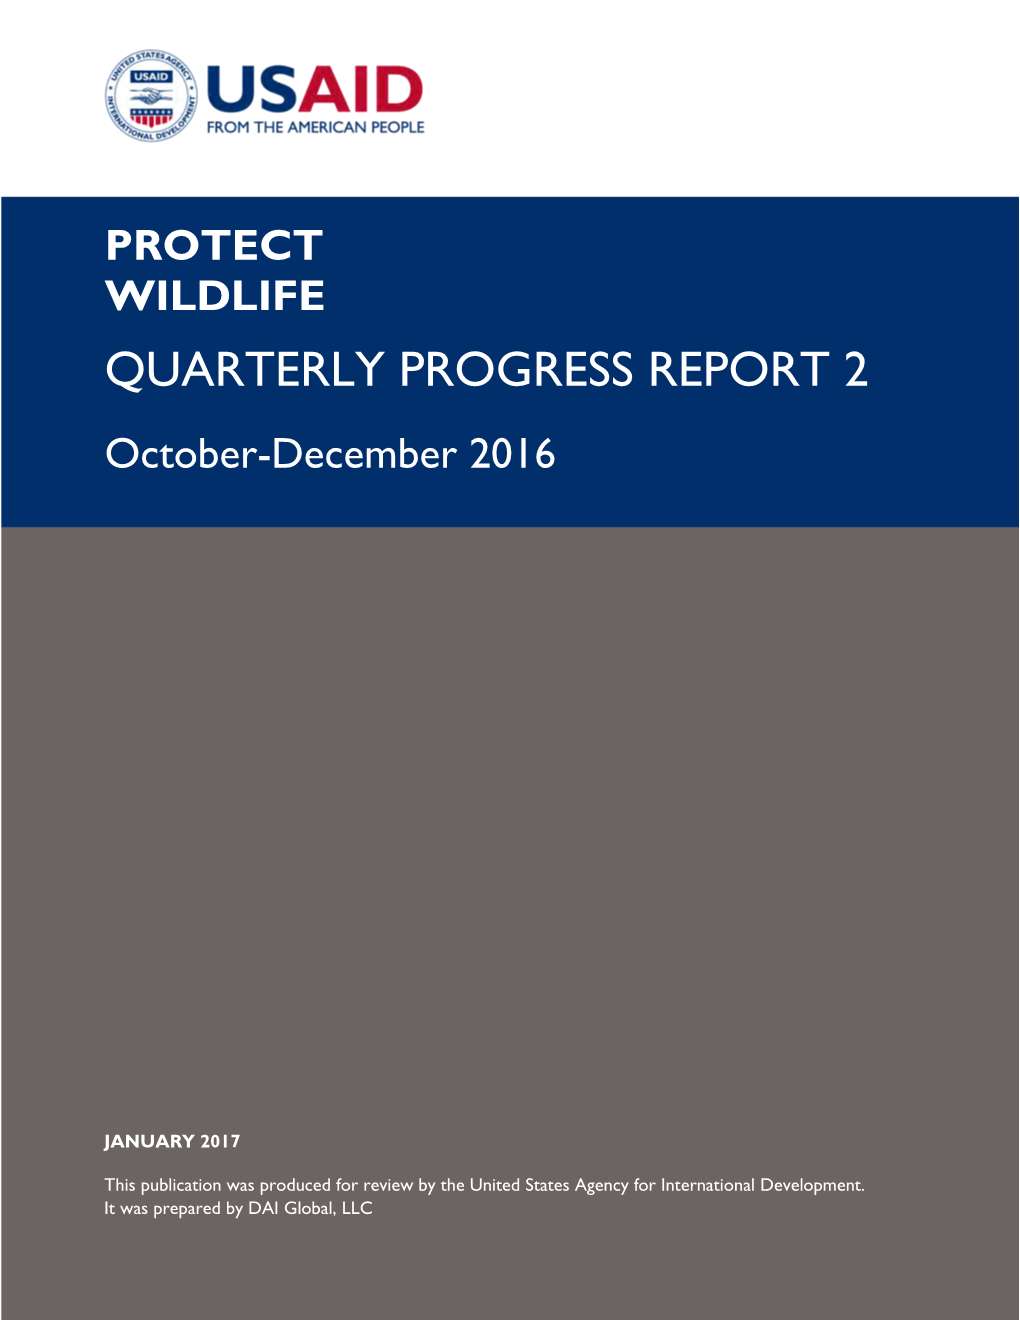 QUARTERLY PROGRESS REPORT 2 October-December 2016